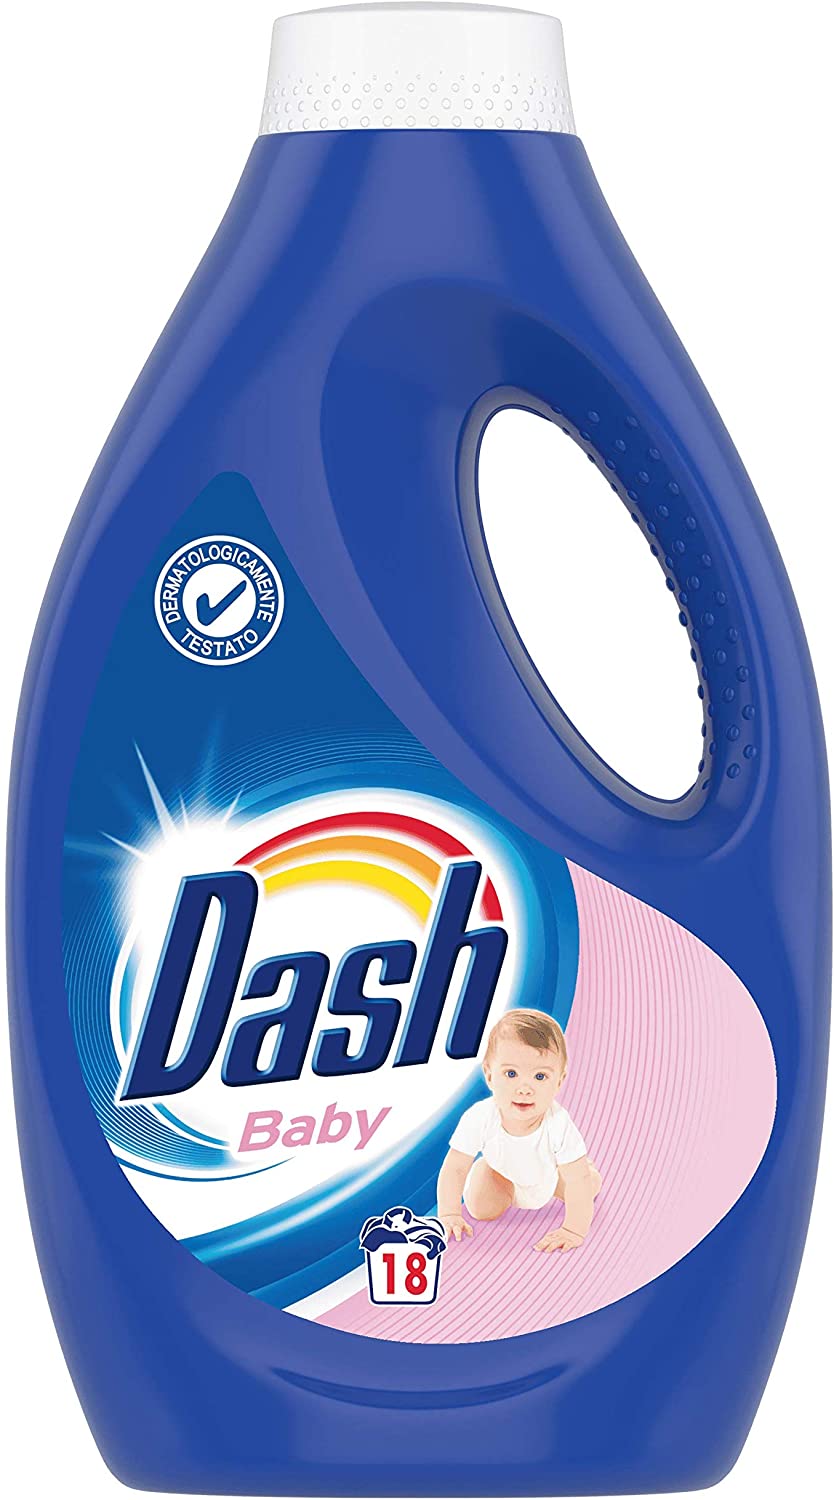 Nuovaeuro: Dash detersivo liquido baby 18 lavaggi, lavatrice  dermatologicamente testato per le pelli sensibili - 990 ml